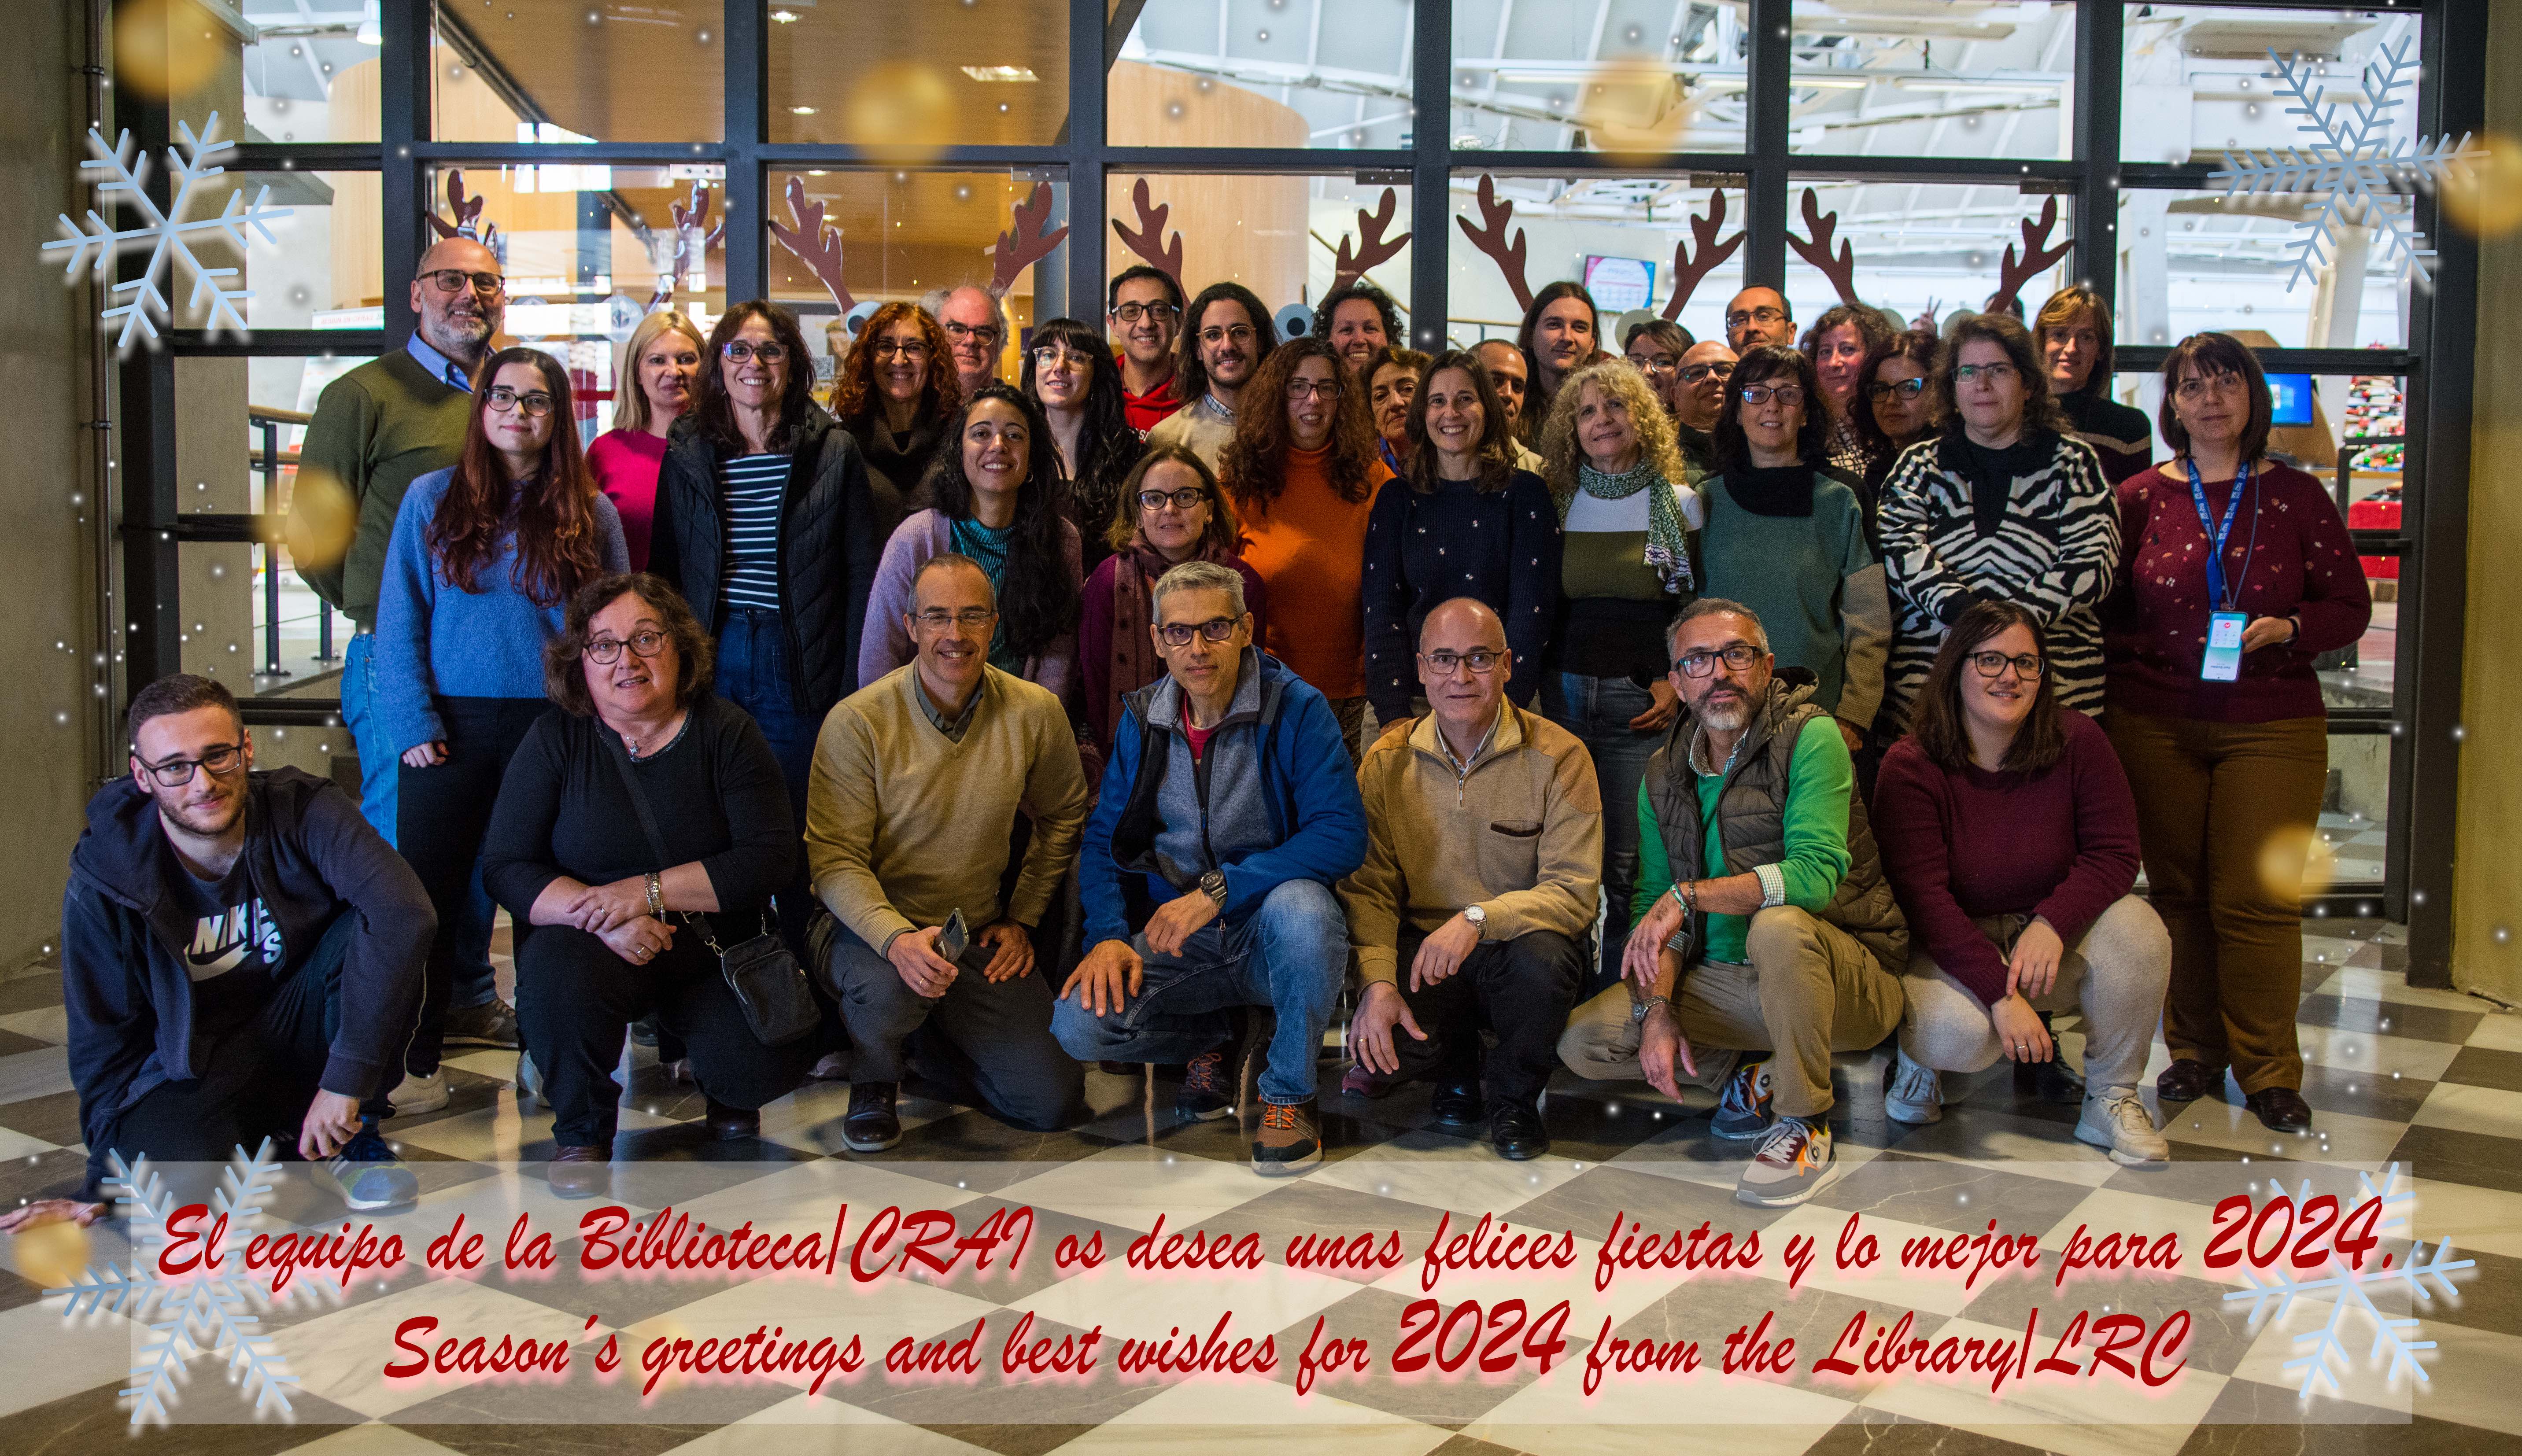 Fotografía de Felicitación Navideña: El equipo de la Biblioteca/CRAI os desea unas felices fiestas y lo mejor para 2024 - Season´s greetings and best wishes for 2024 from the Library/LRC